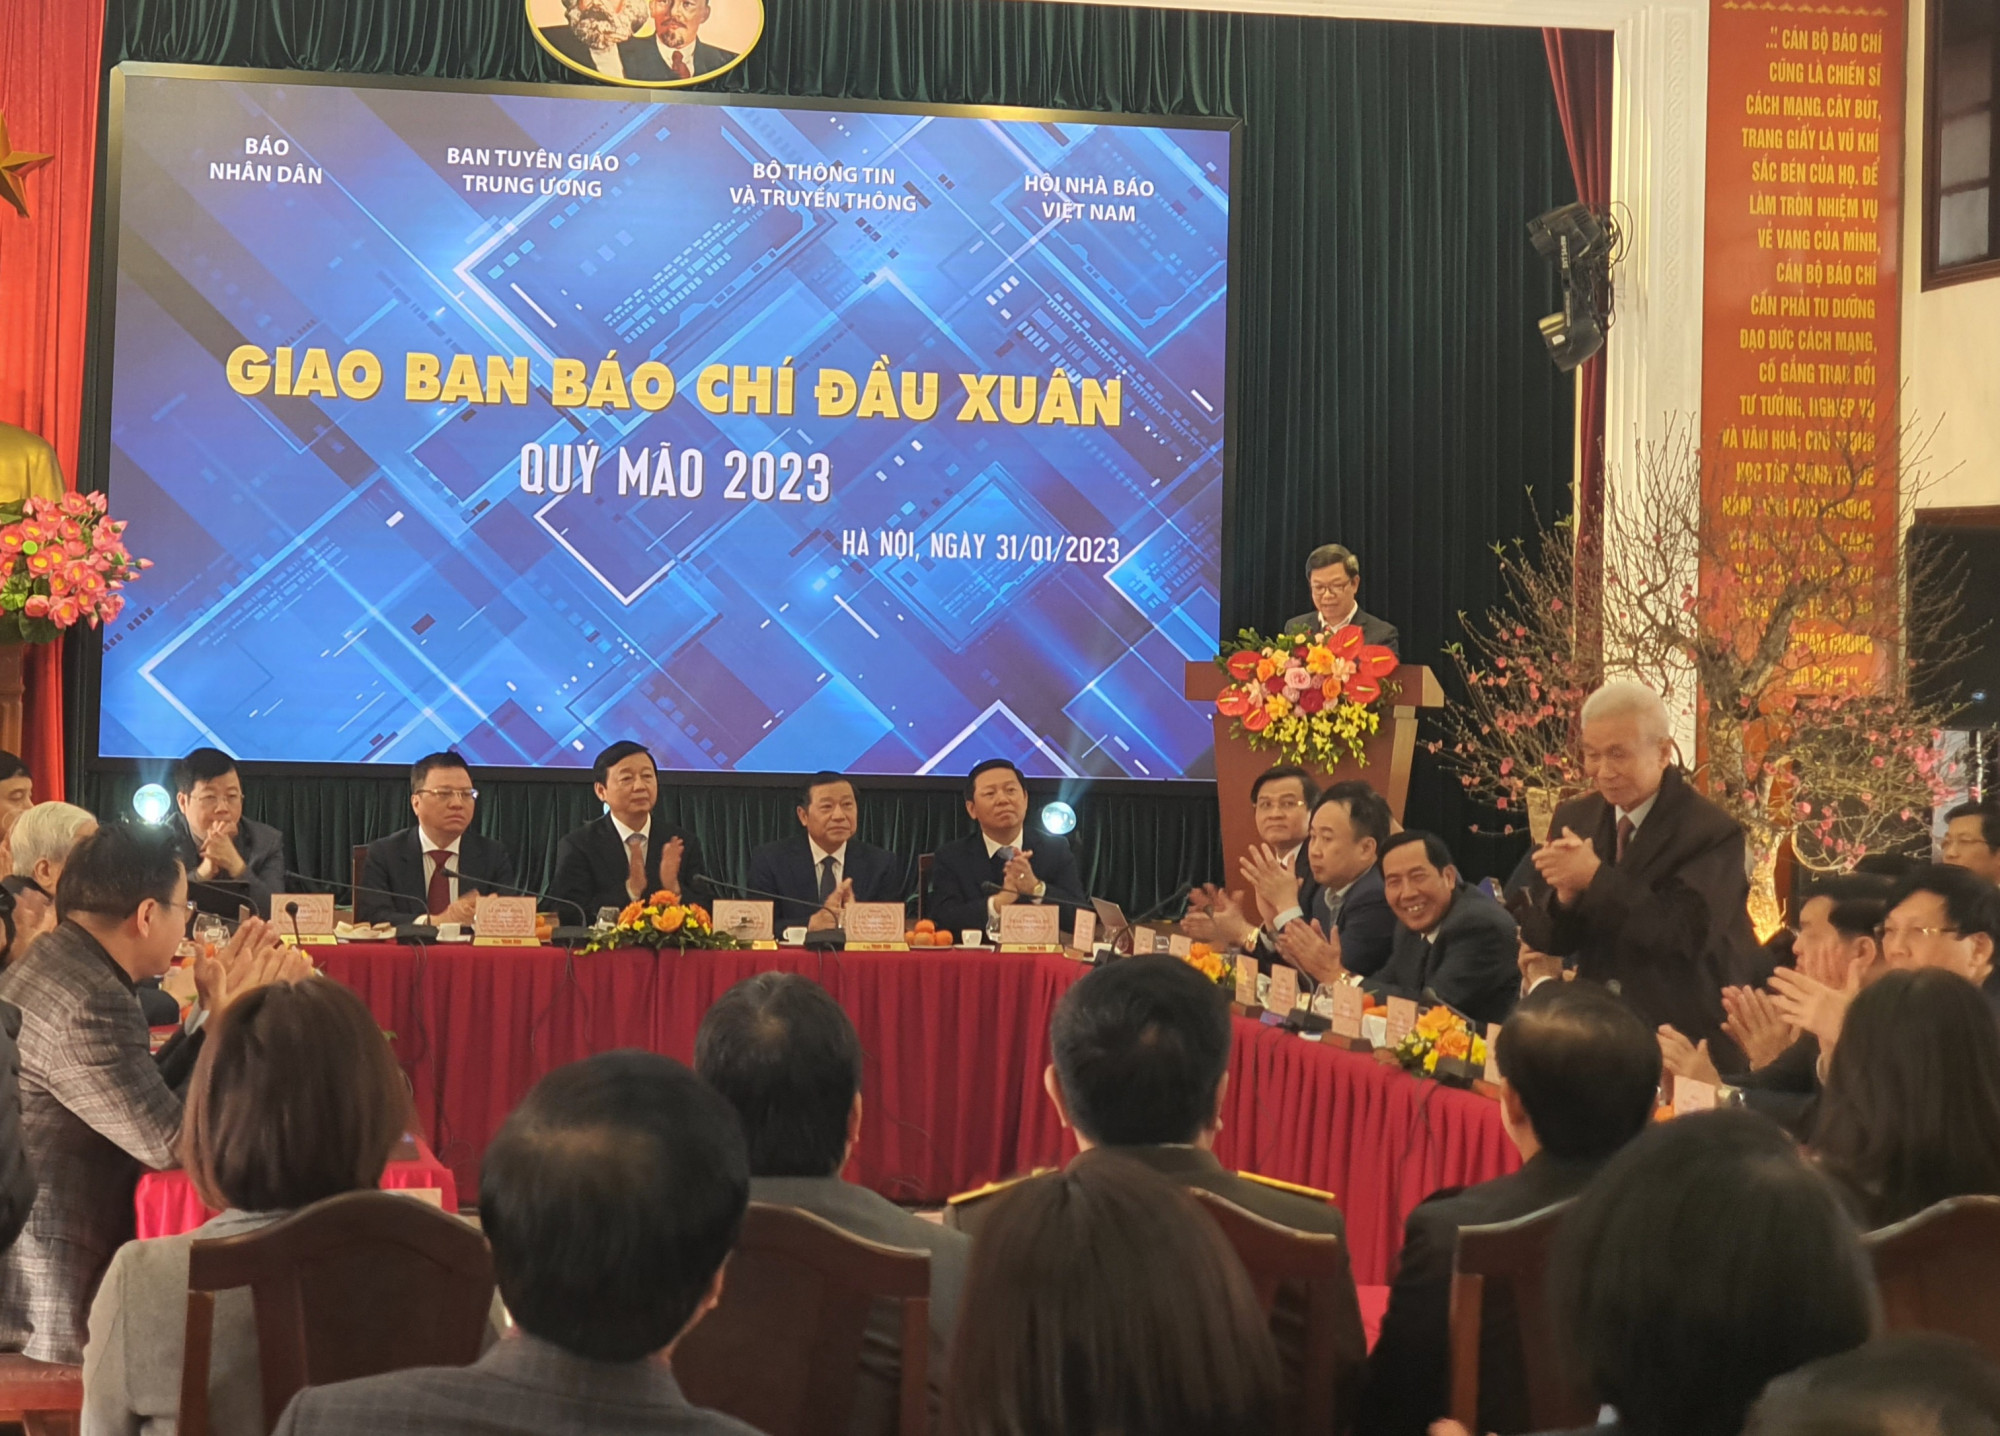 Phó Thủ tướng Trần Hồng Hà tham dự Hội nghị Giao ban báo chí đầu xuân